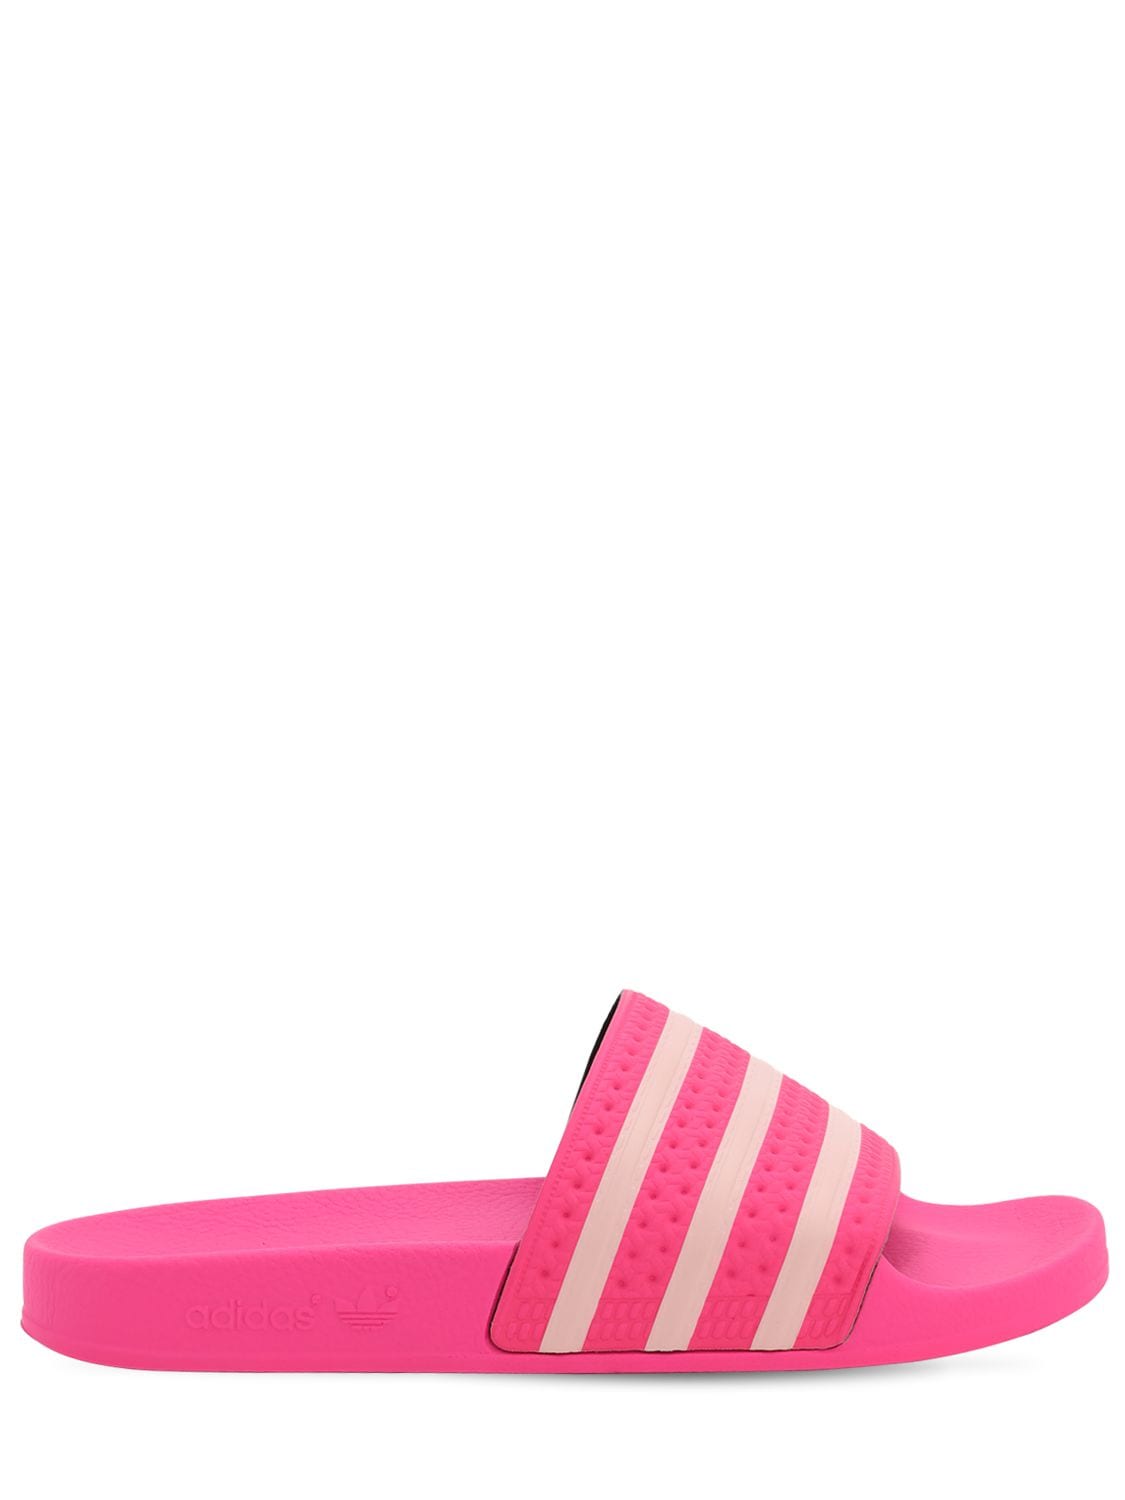 Adidas Originals Adilette Aqua Slide Sandal In Fuchsia